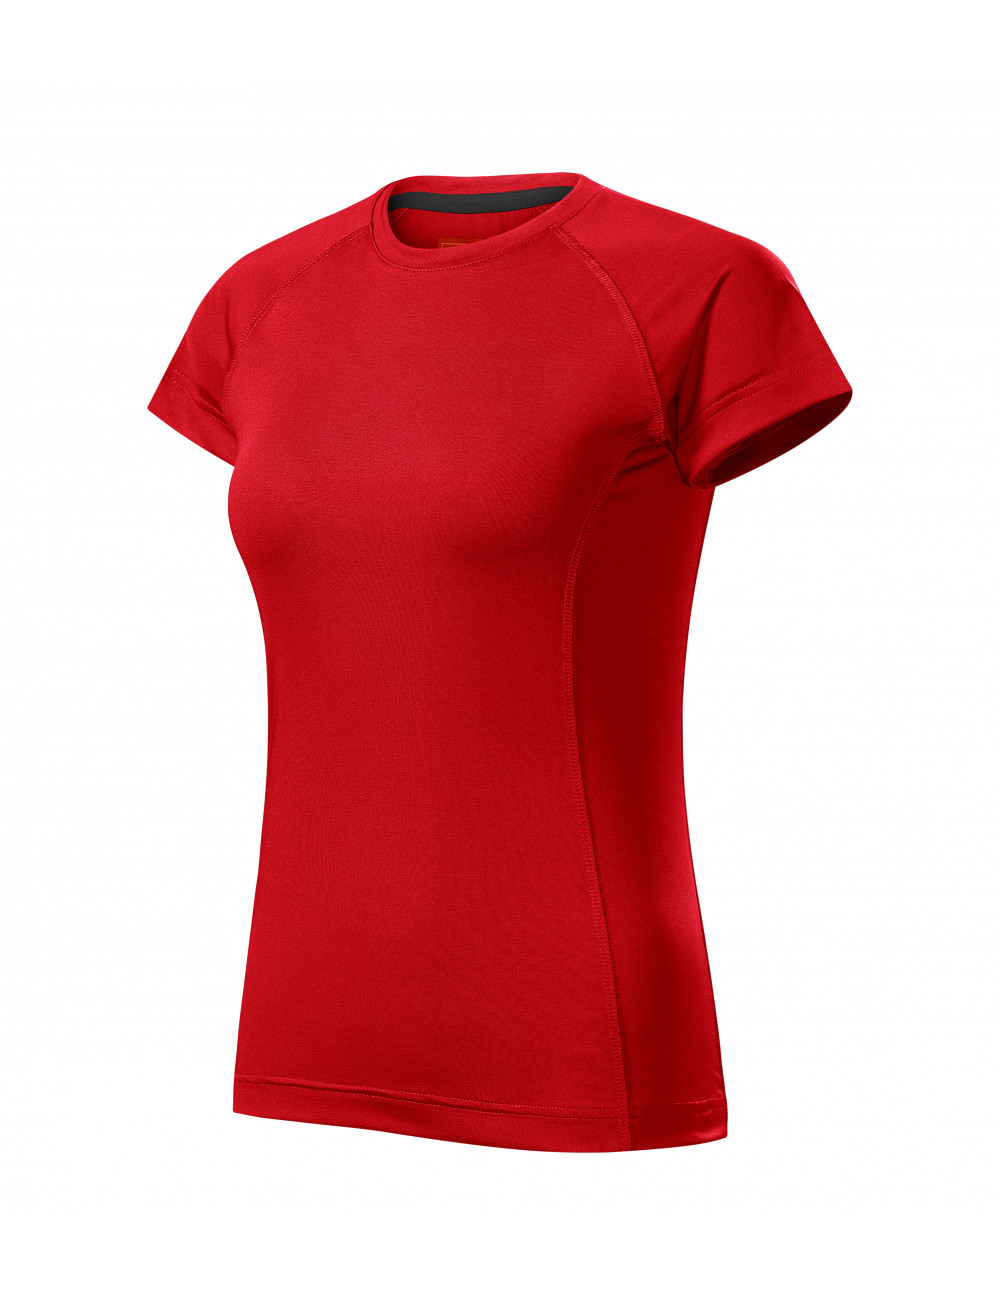 Women`s t-shirt destiny 176 red Adler Malfini